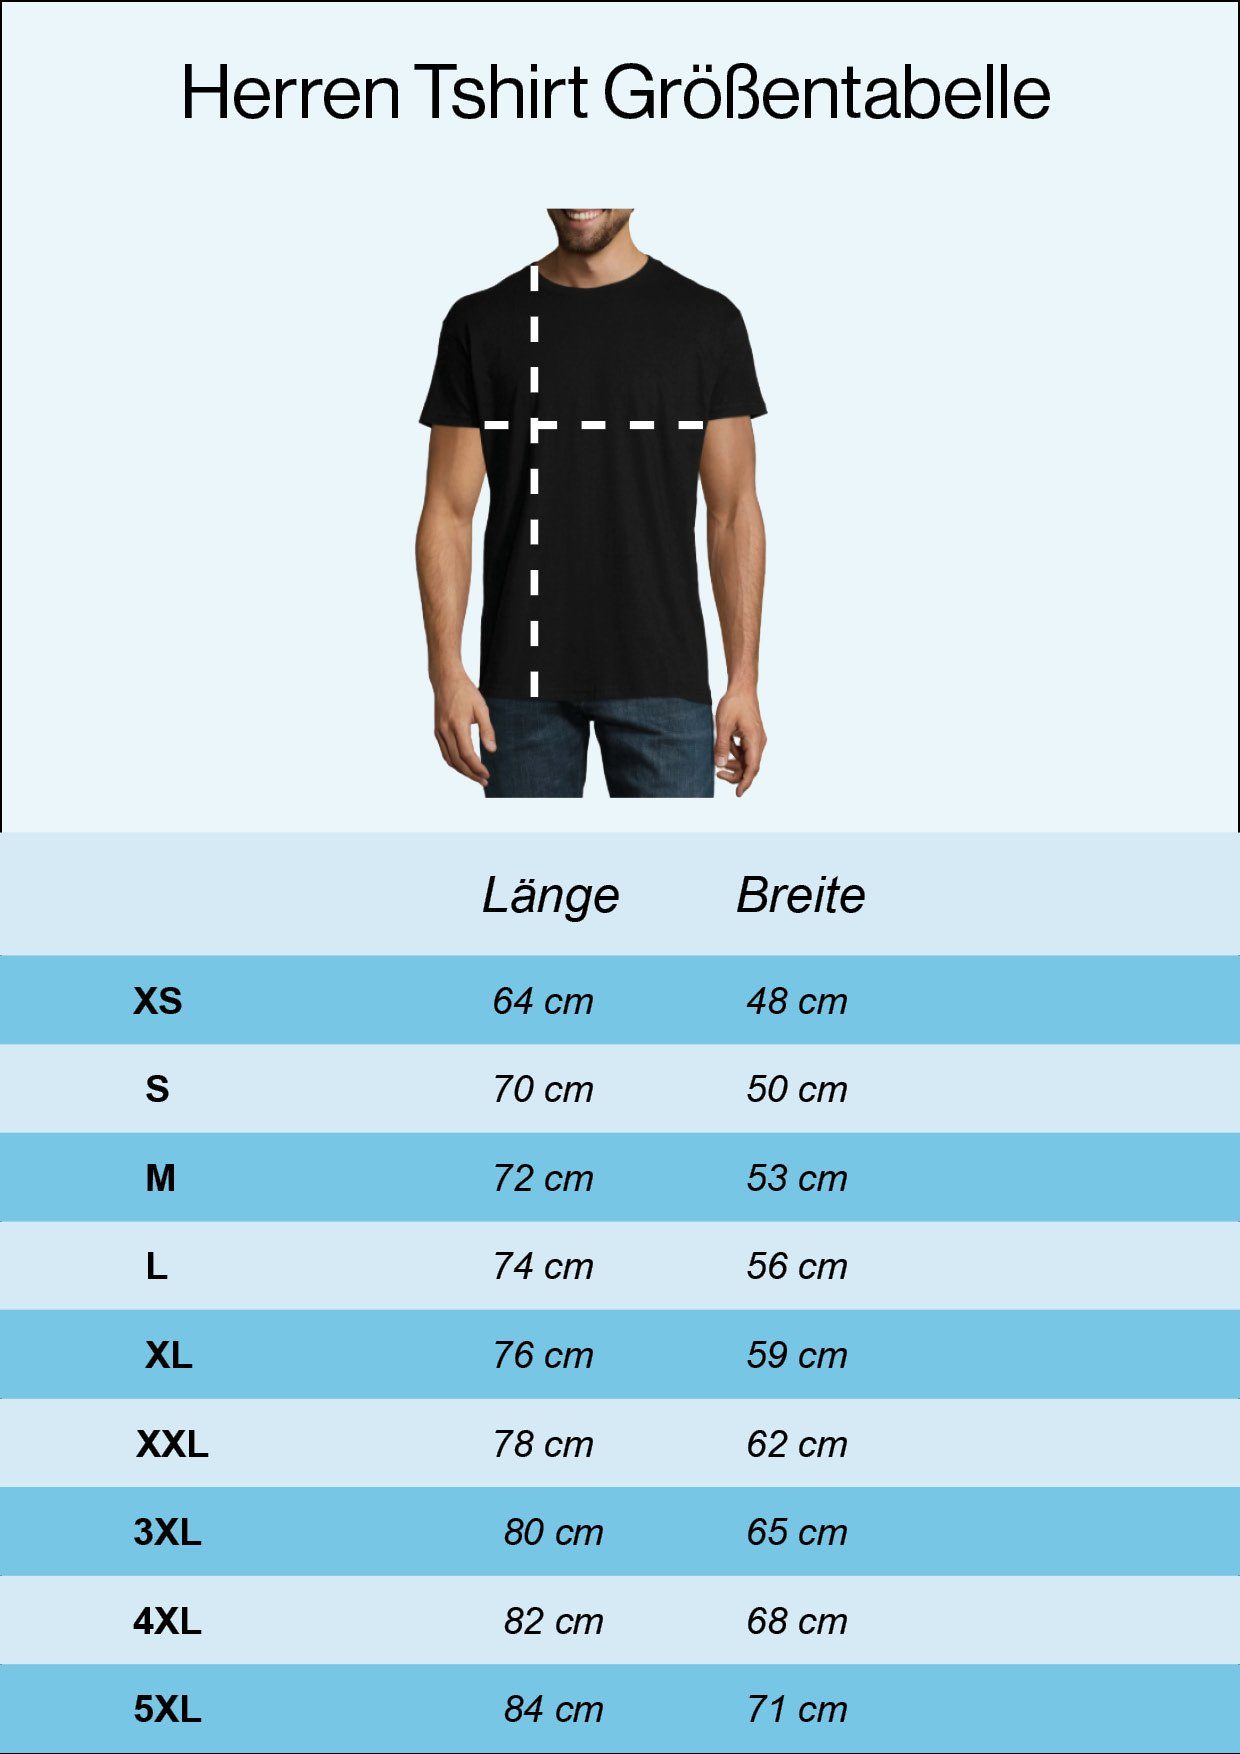 Schwarz mit Schädel Designz T-Shirt Youth Herren Italy trendigem Frontprint Shirt